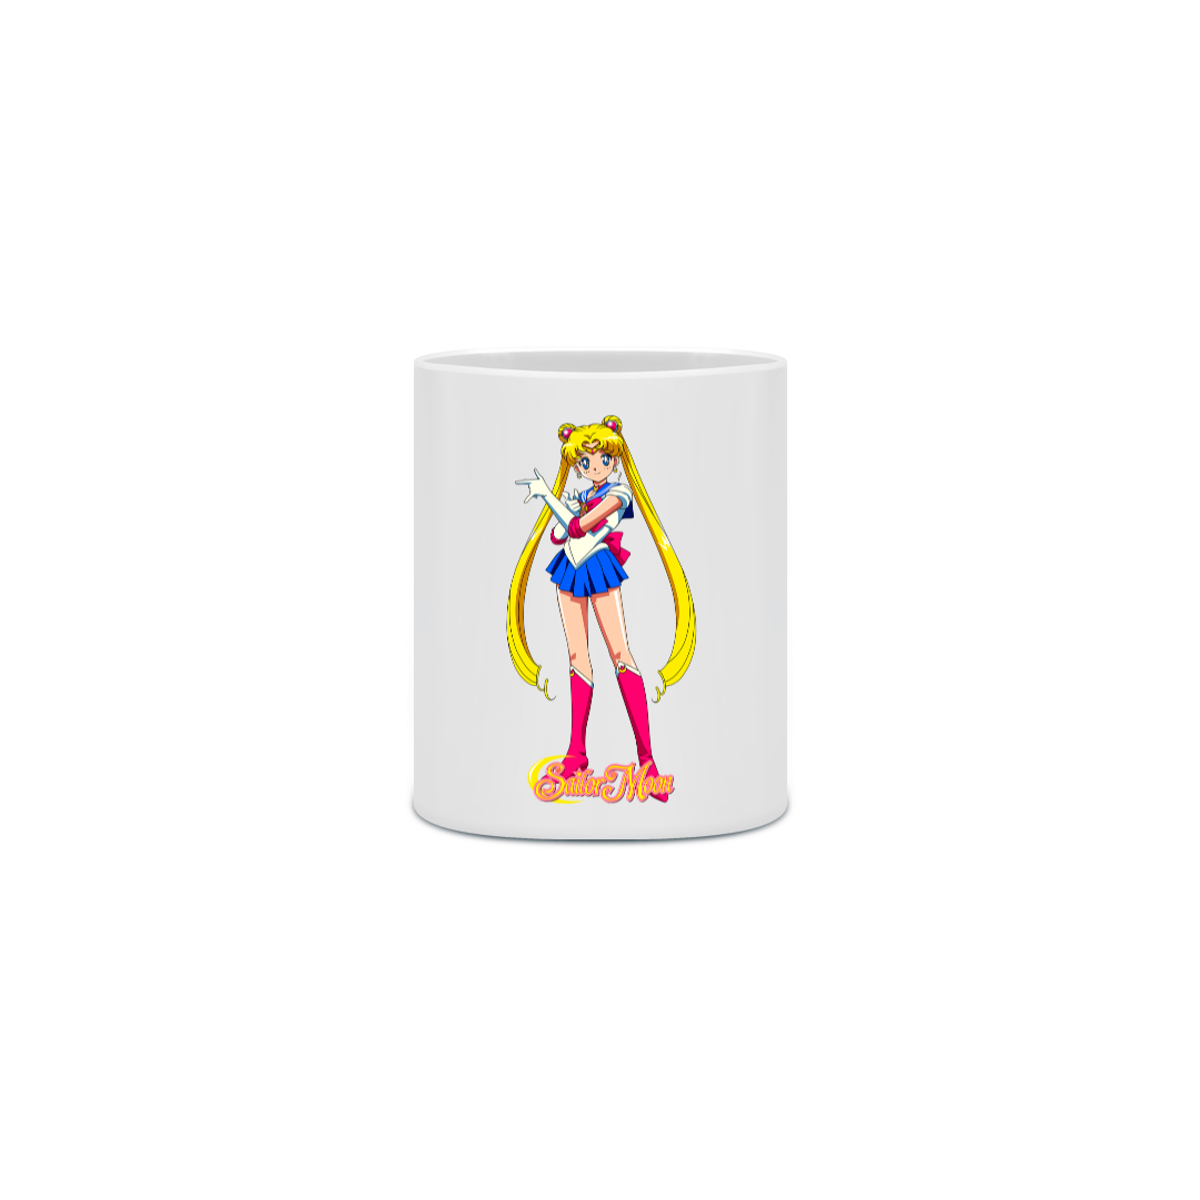 Nome do produto: Caneca Sailor Moon 5